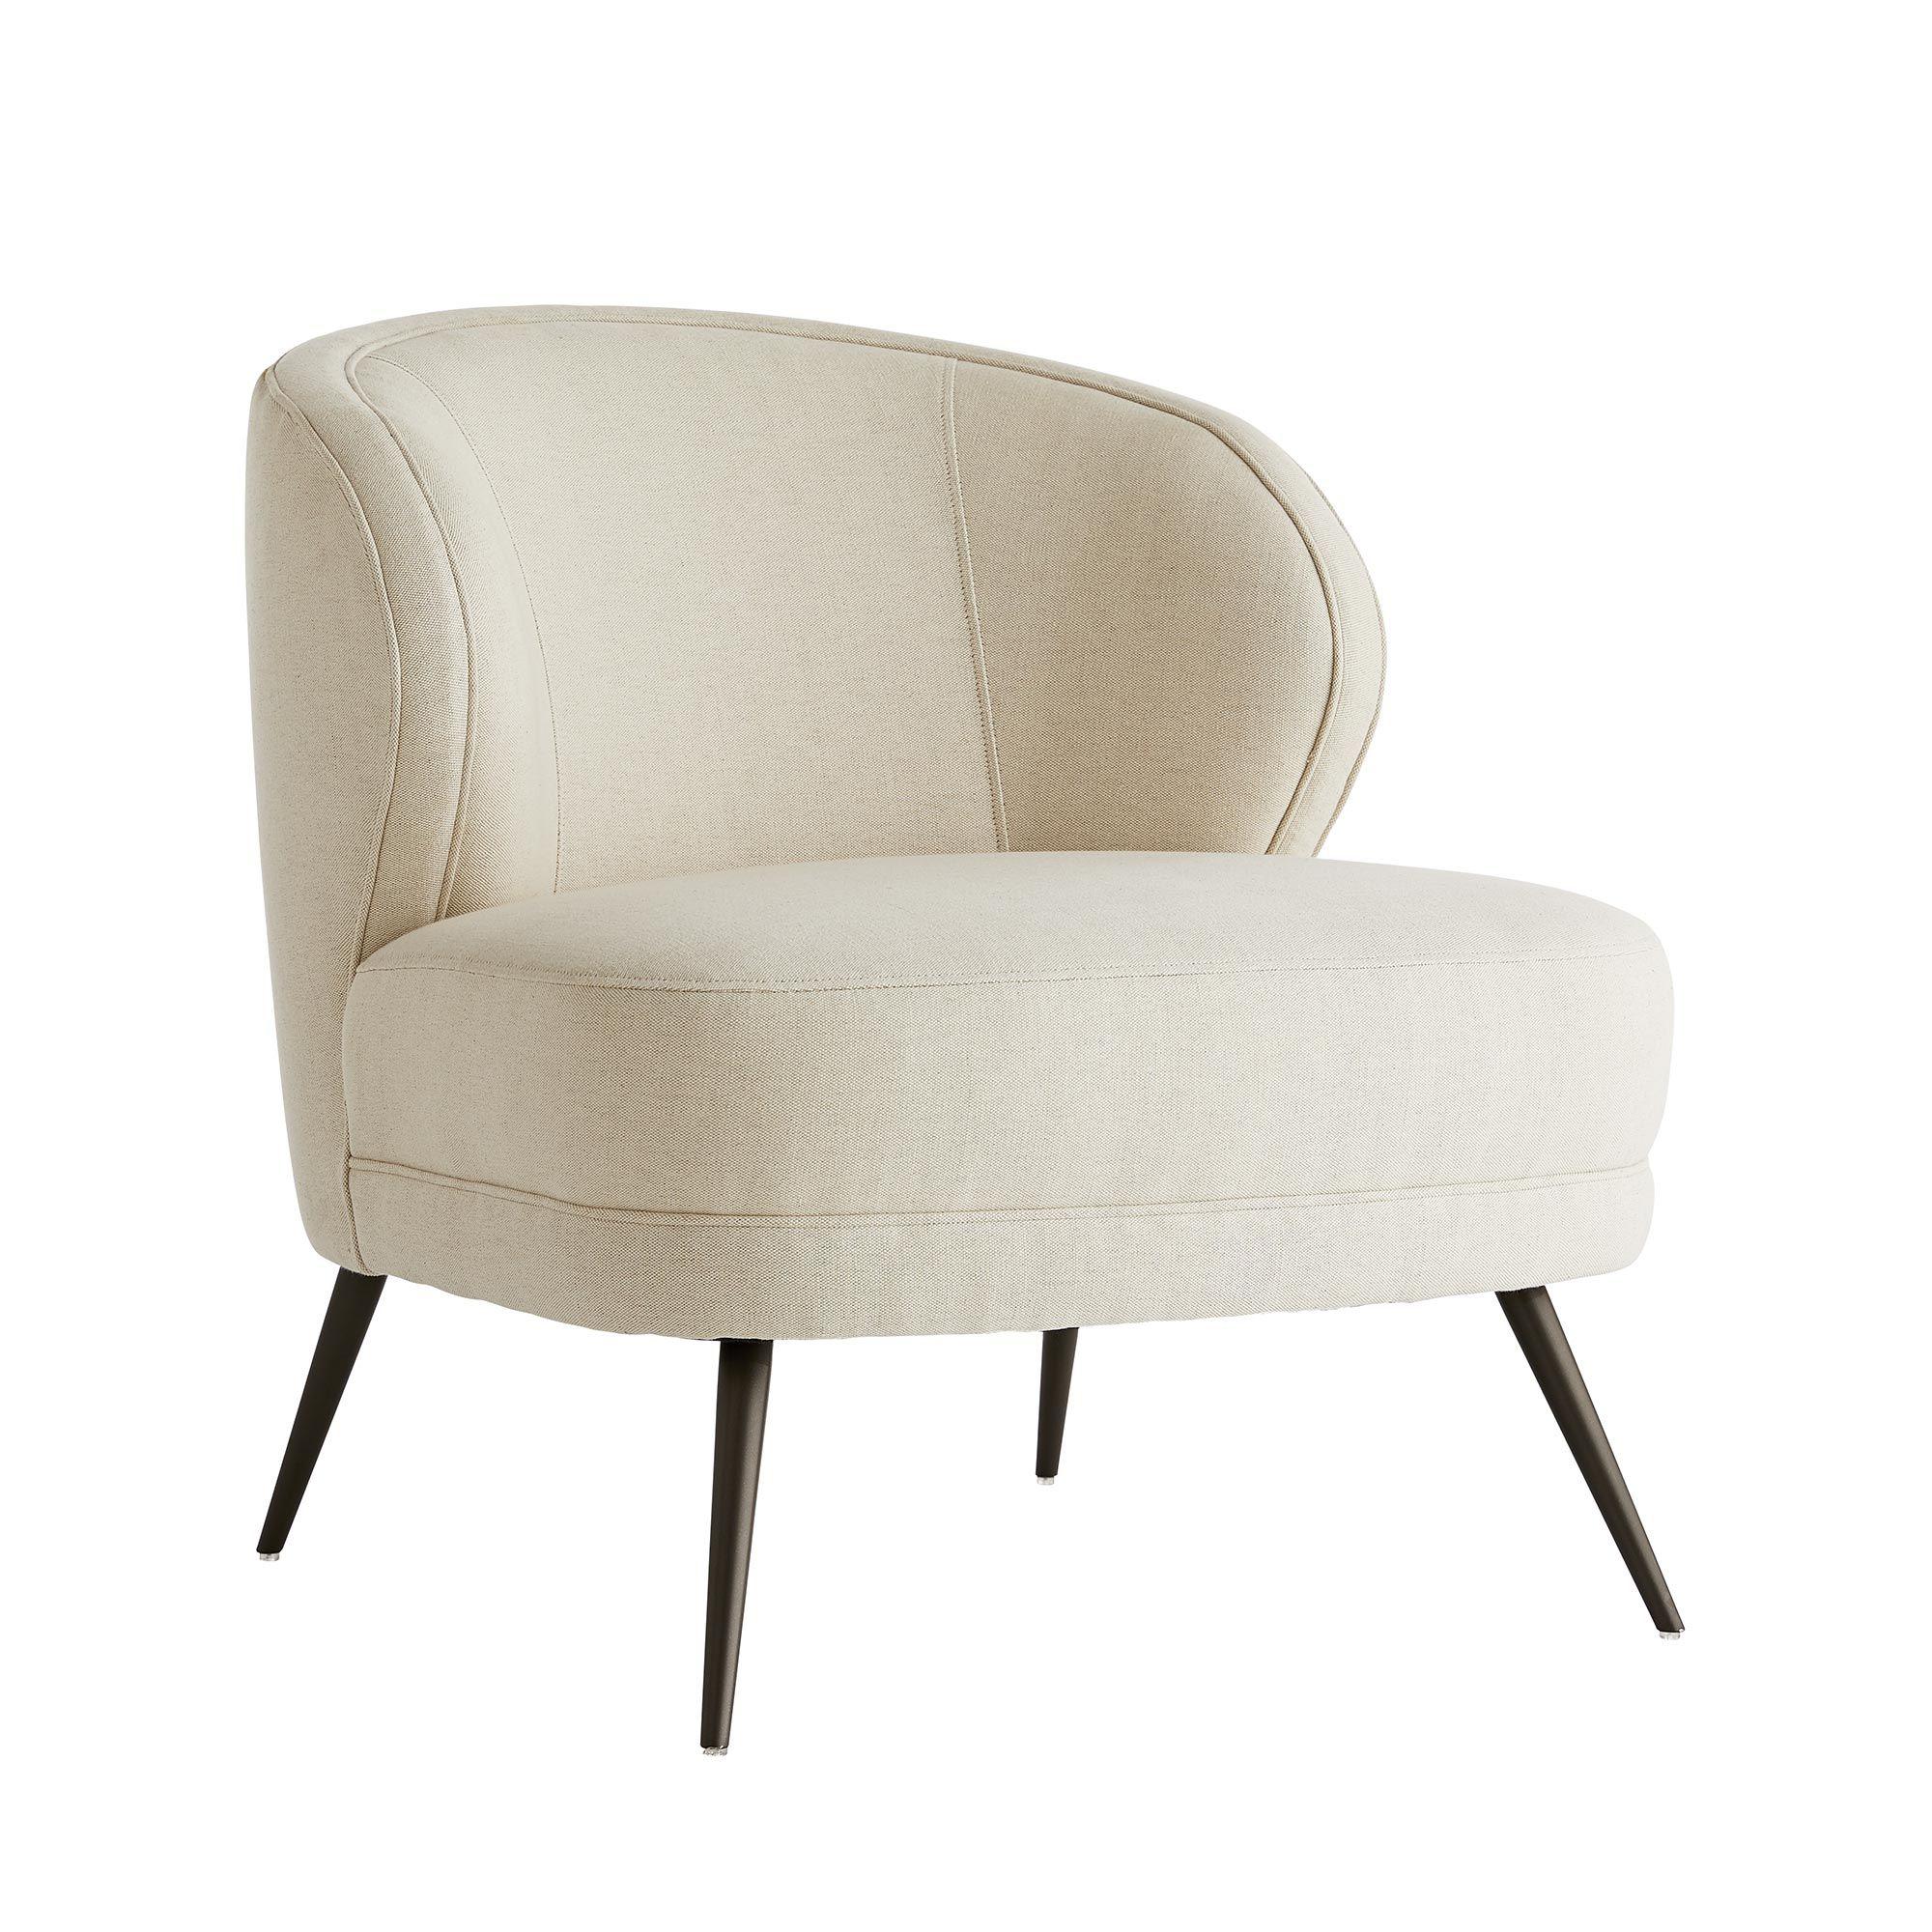 Купить Кресло Kitts Chair Flax Linen в интернет-магазине roooms.ru